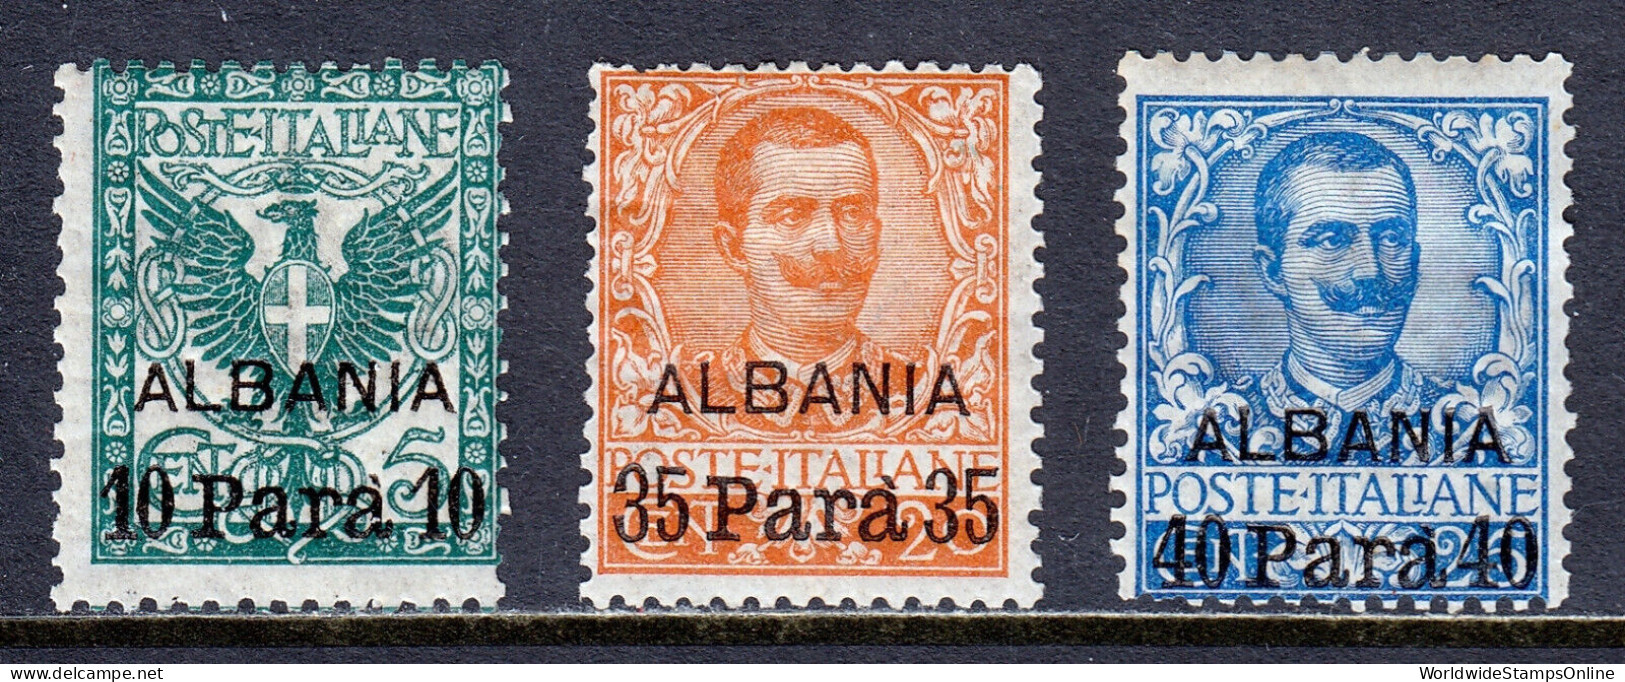 ITALY (OFFICES IN ALBANIA) — SCOTT 1-3 — 1903 OVERPRINT SET — MH — SCV $26 - Albanien